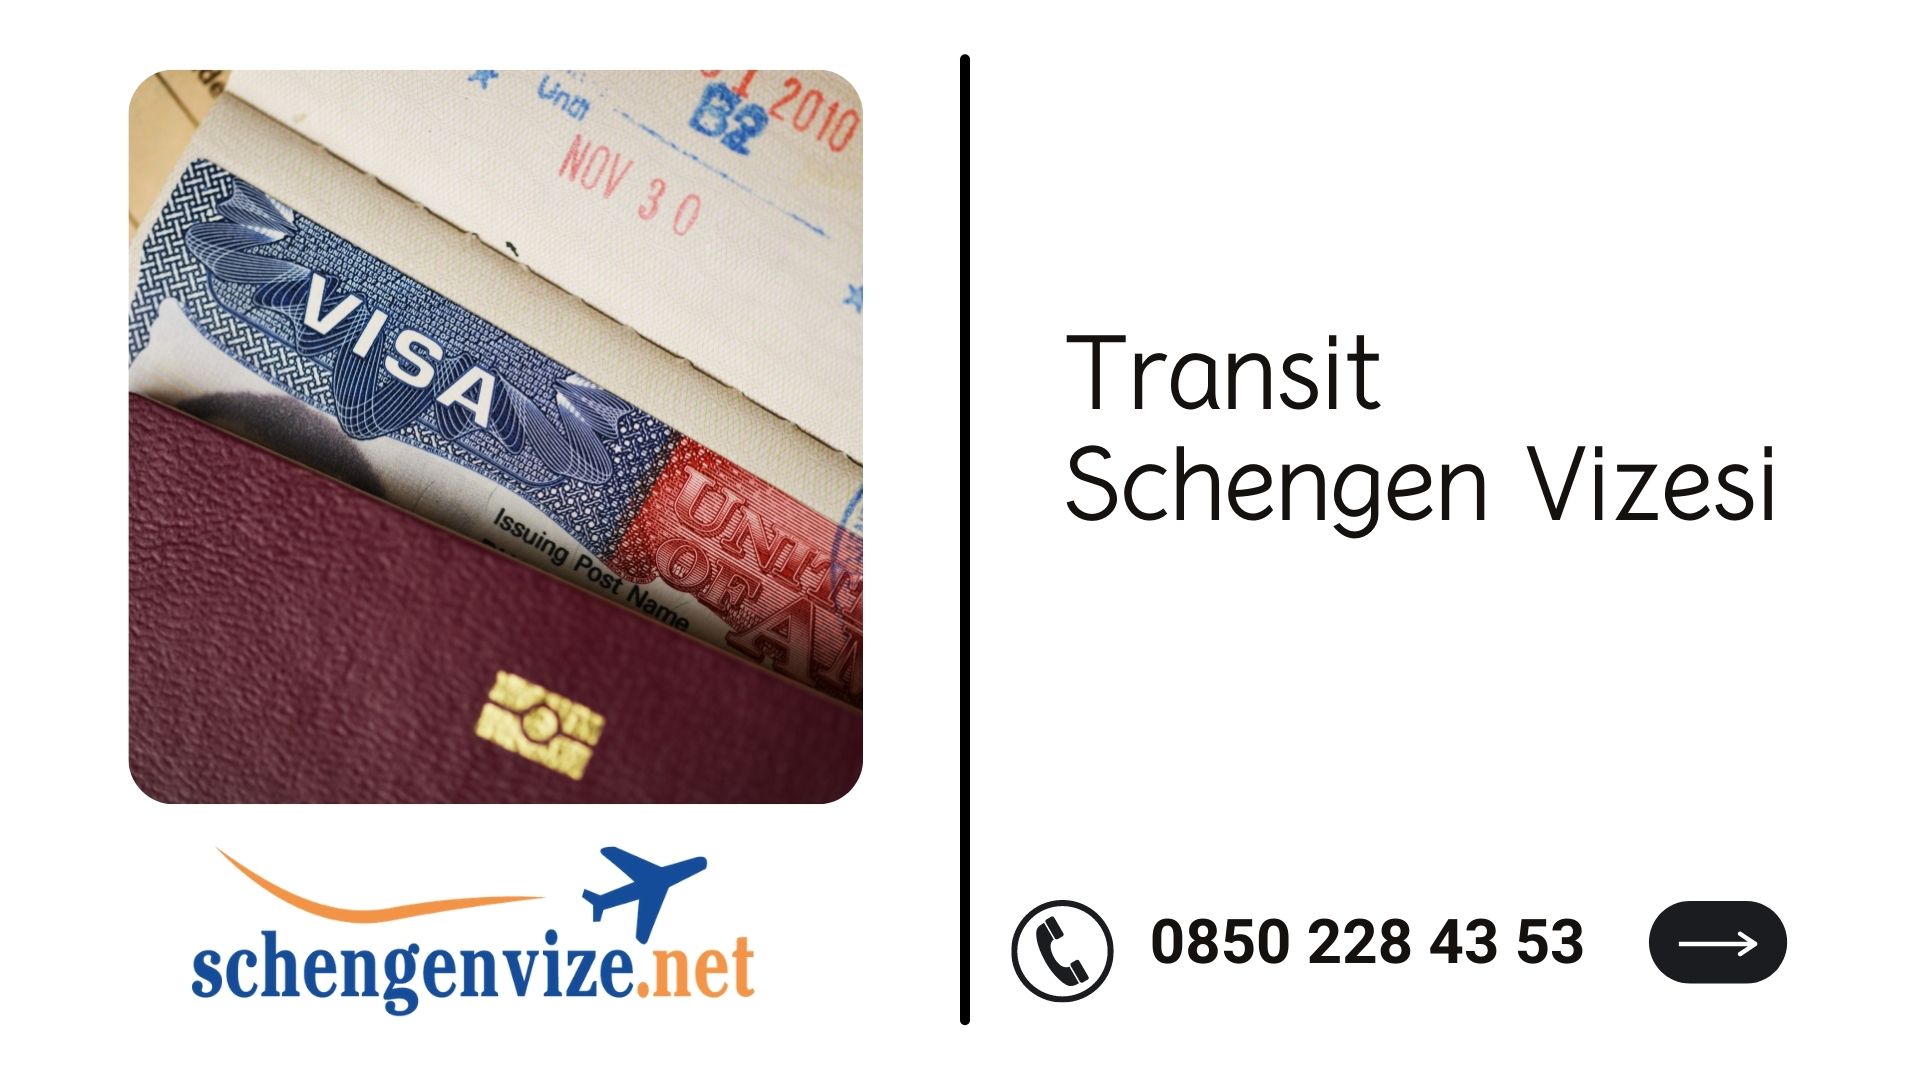 Transit Schengen Vizesi